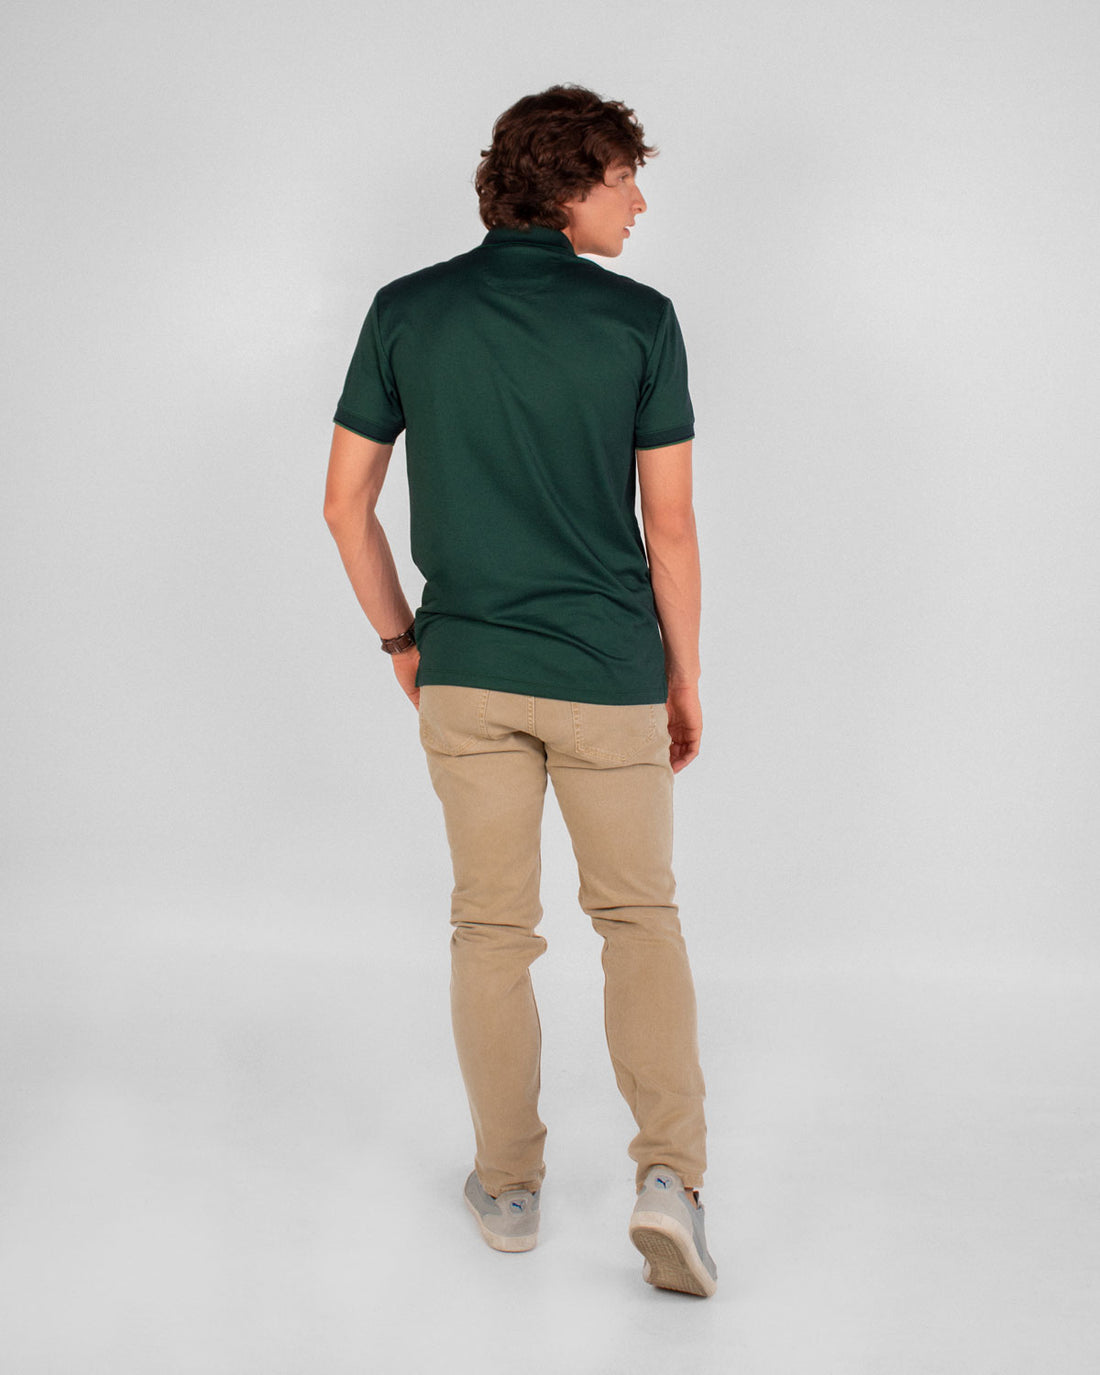 Camiseta polo pique algodón micropima verde militar para hombre